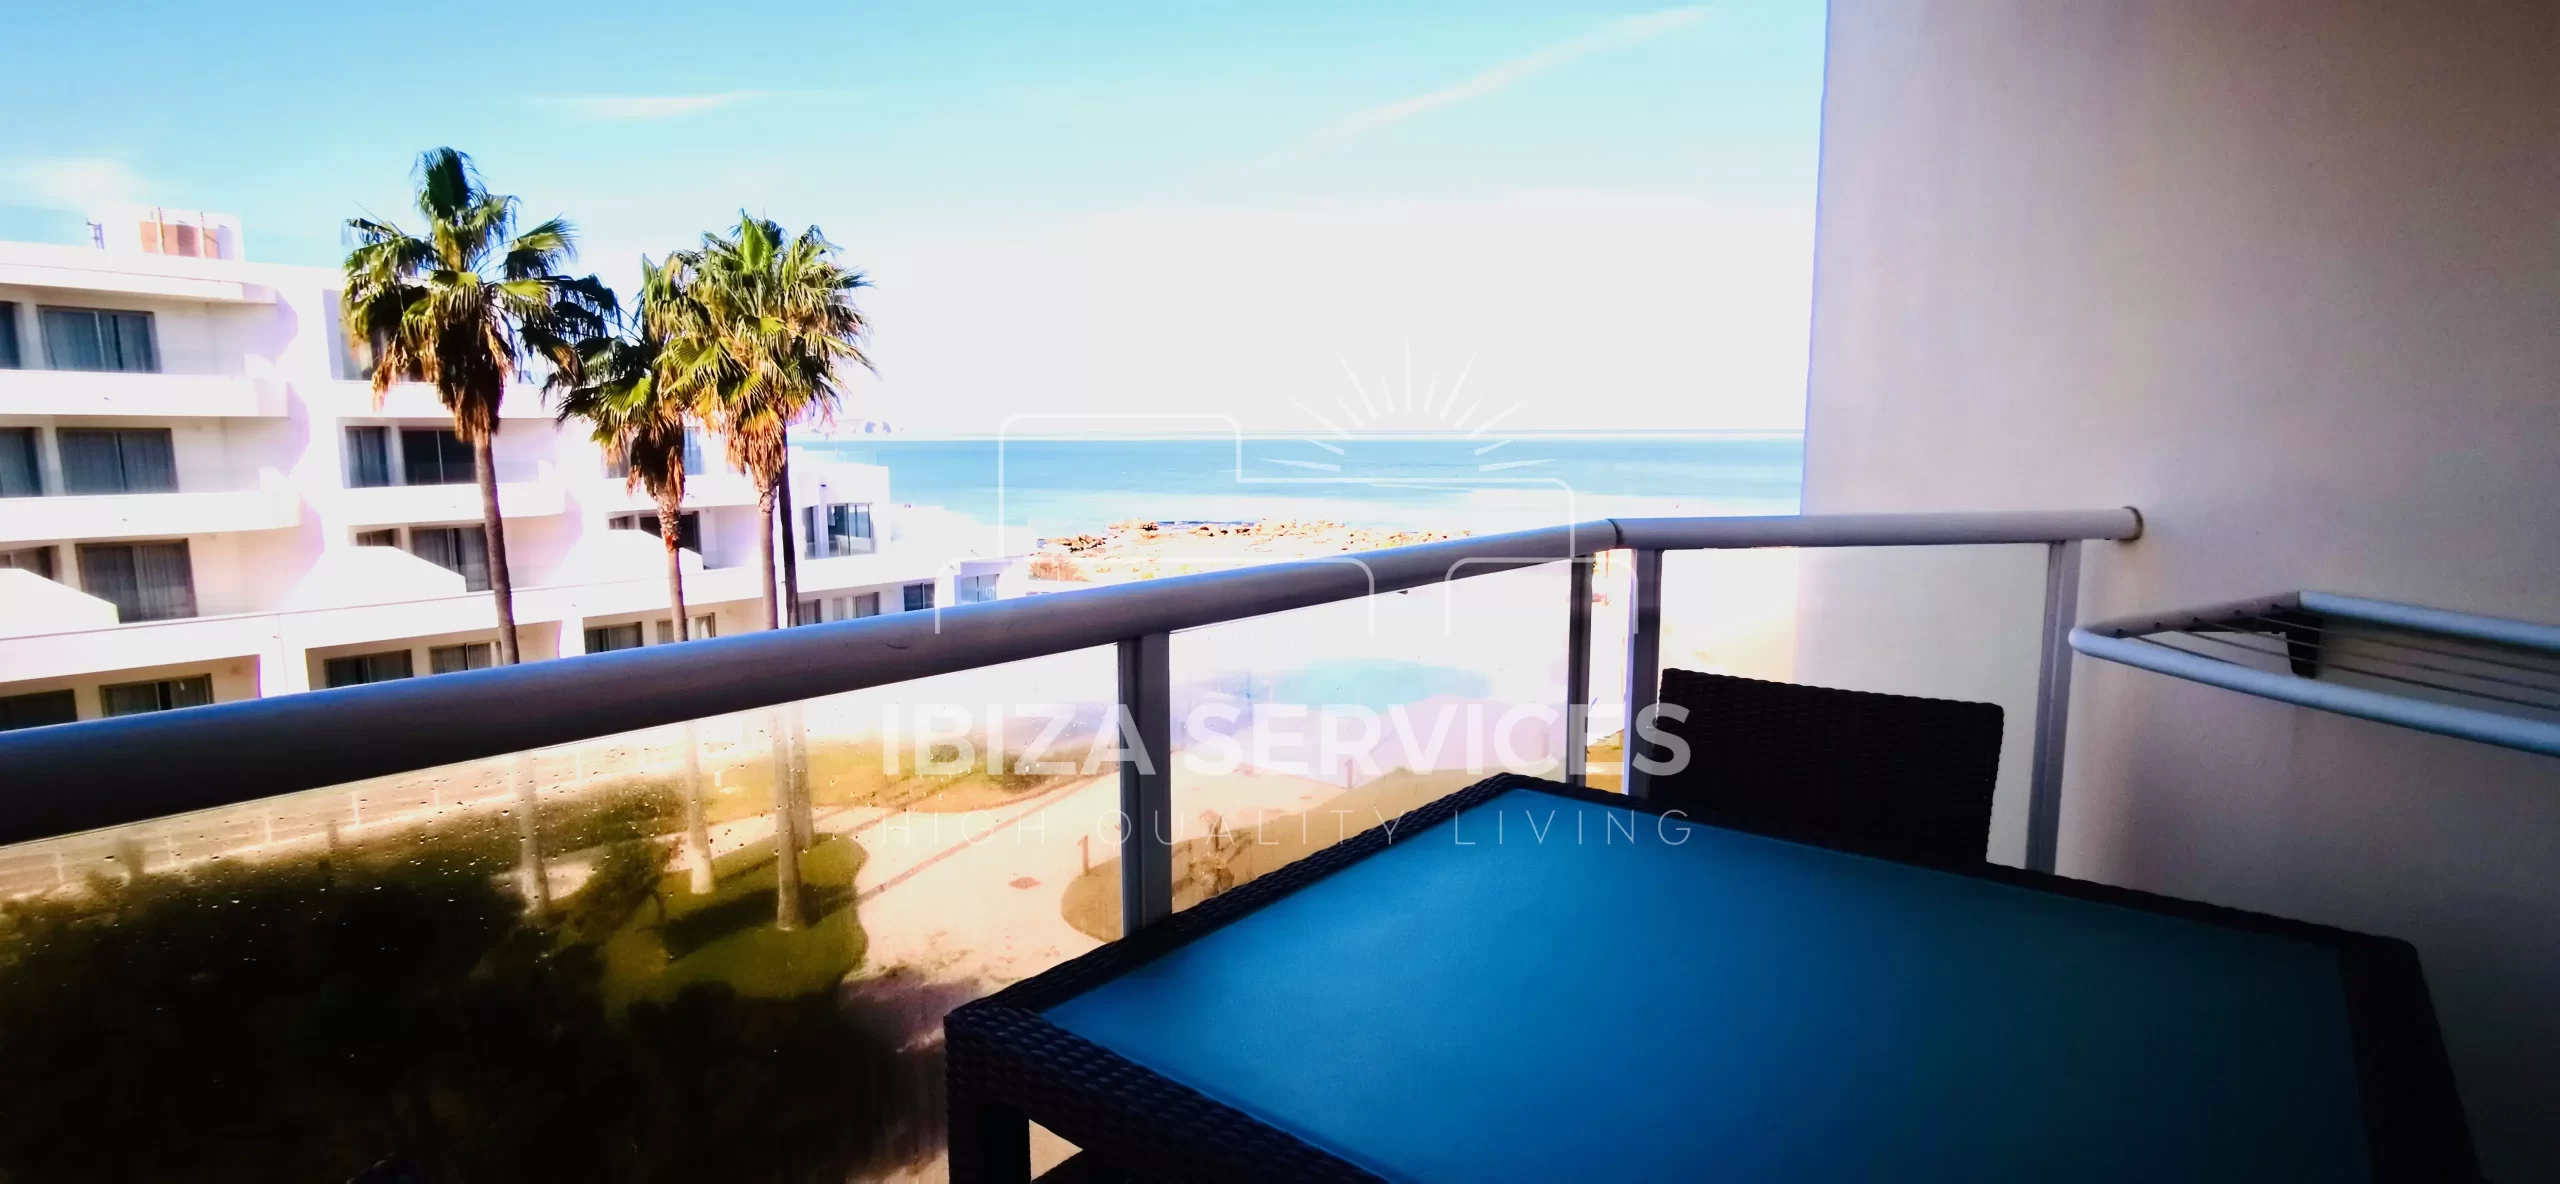 Appartement spacieux avec vue sur la mer à vendre sur la côte ouest d’Ibiza.